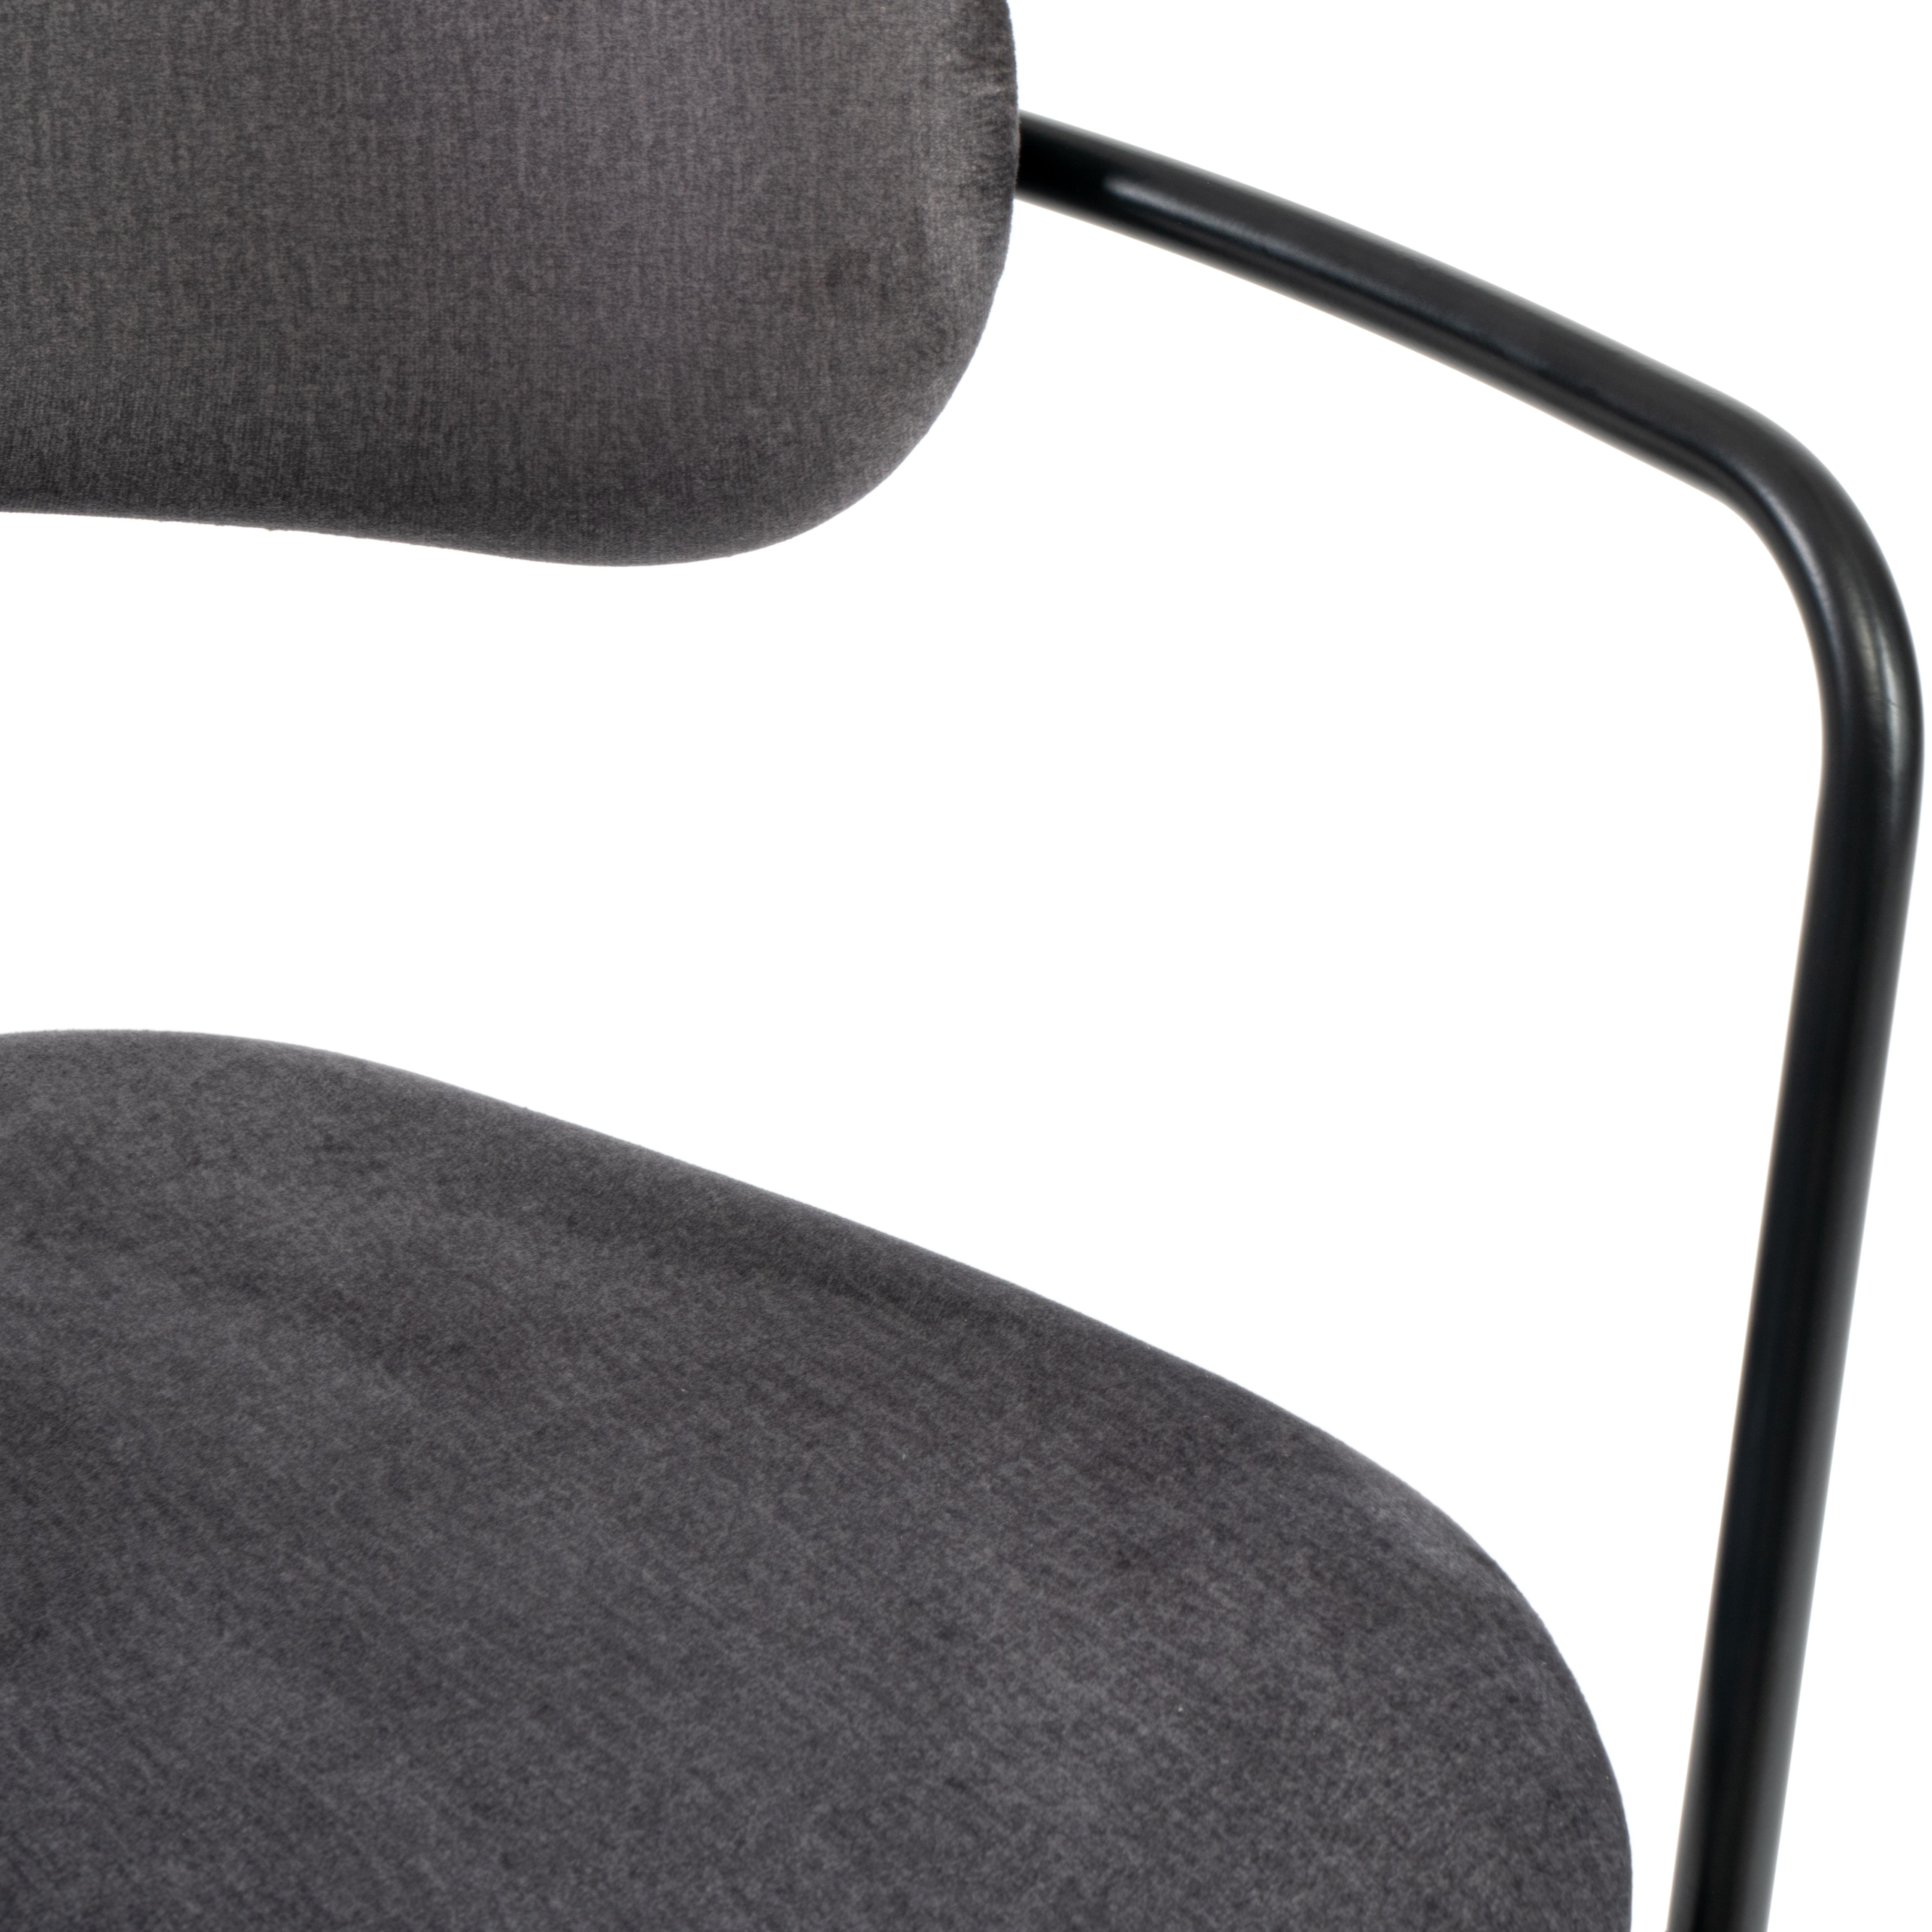 Кресло VAN HALLEN (mod. 2433S) ткань/металл, 54,5х53,5/76 см, высота до сиденья 46 см, серый/черный